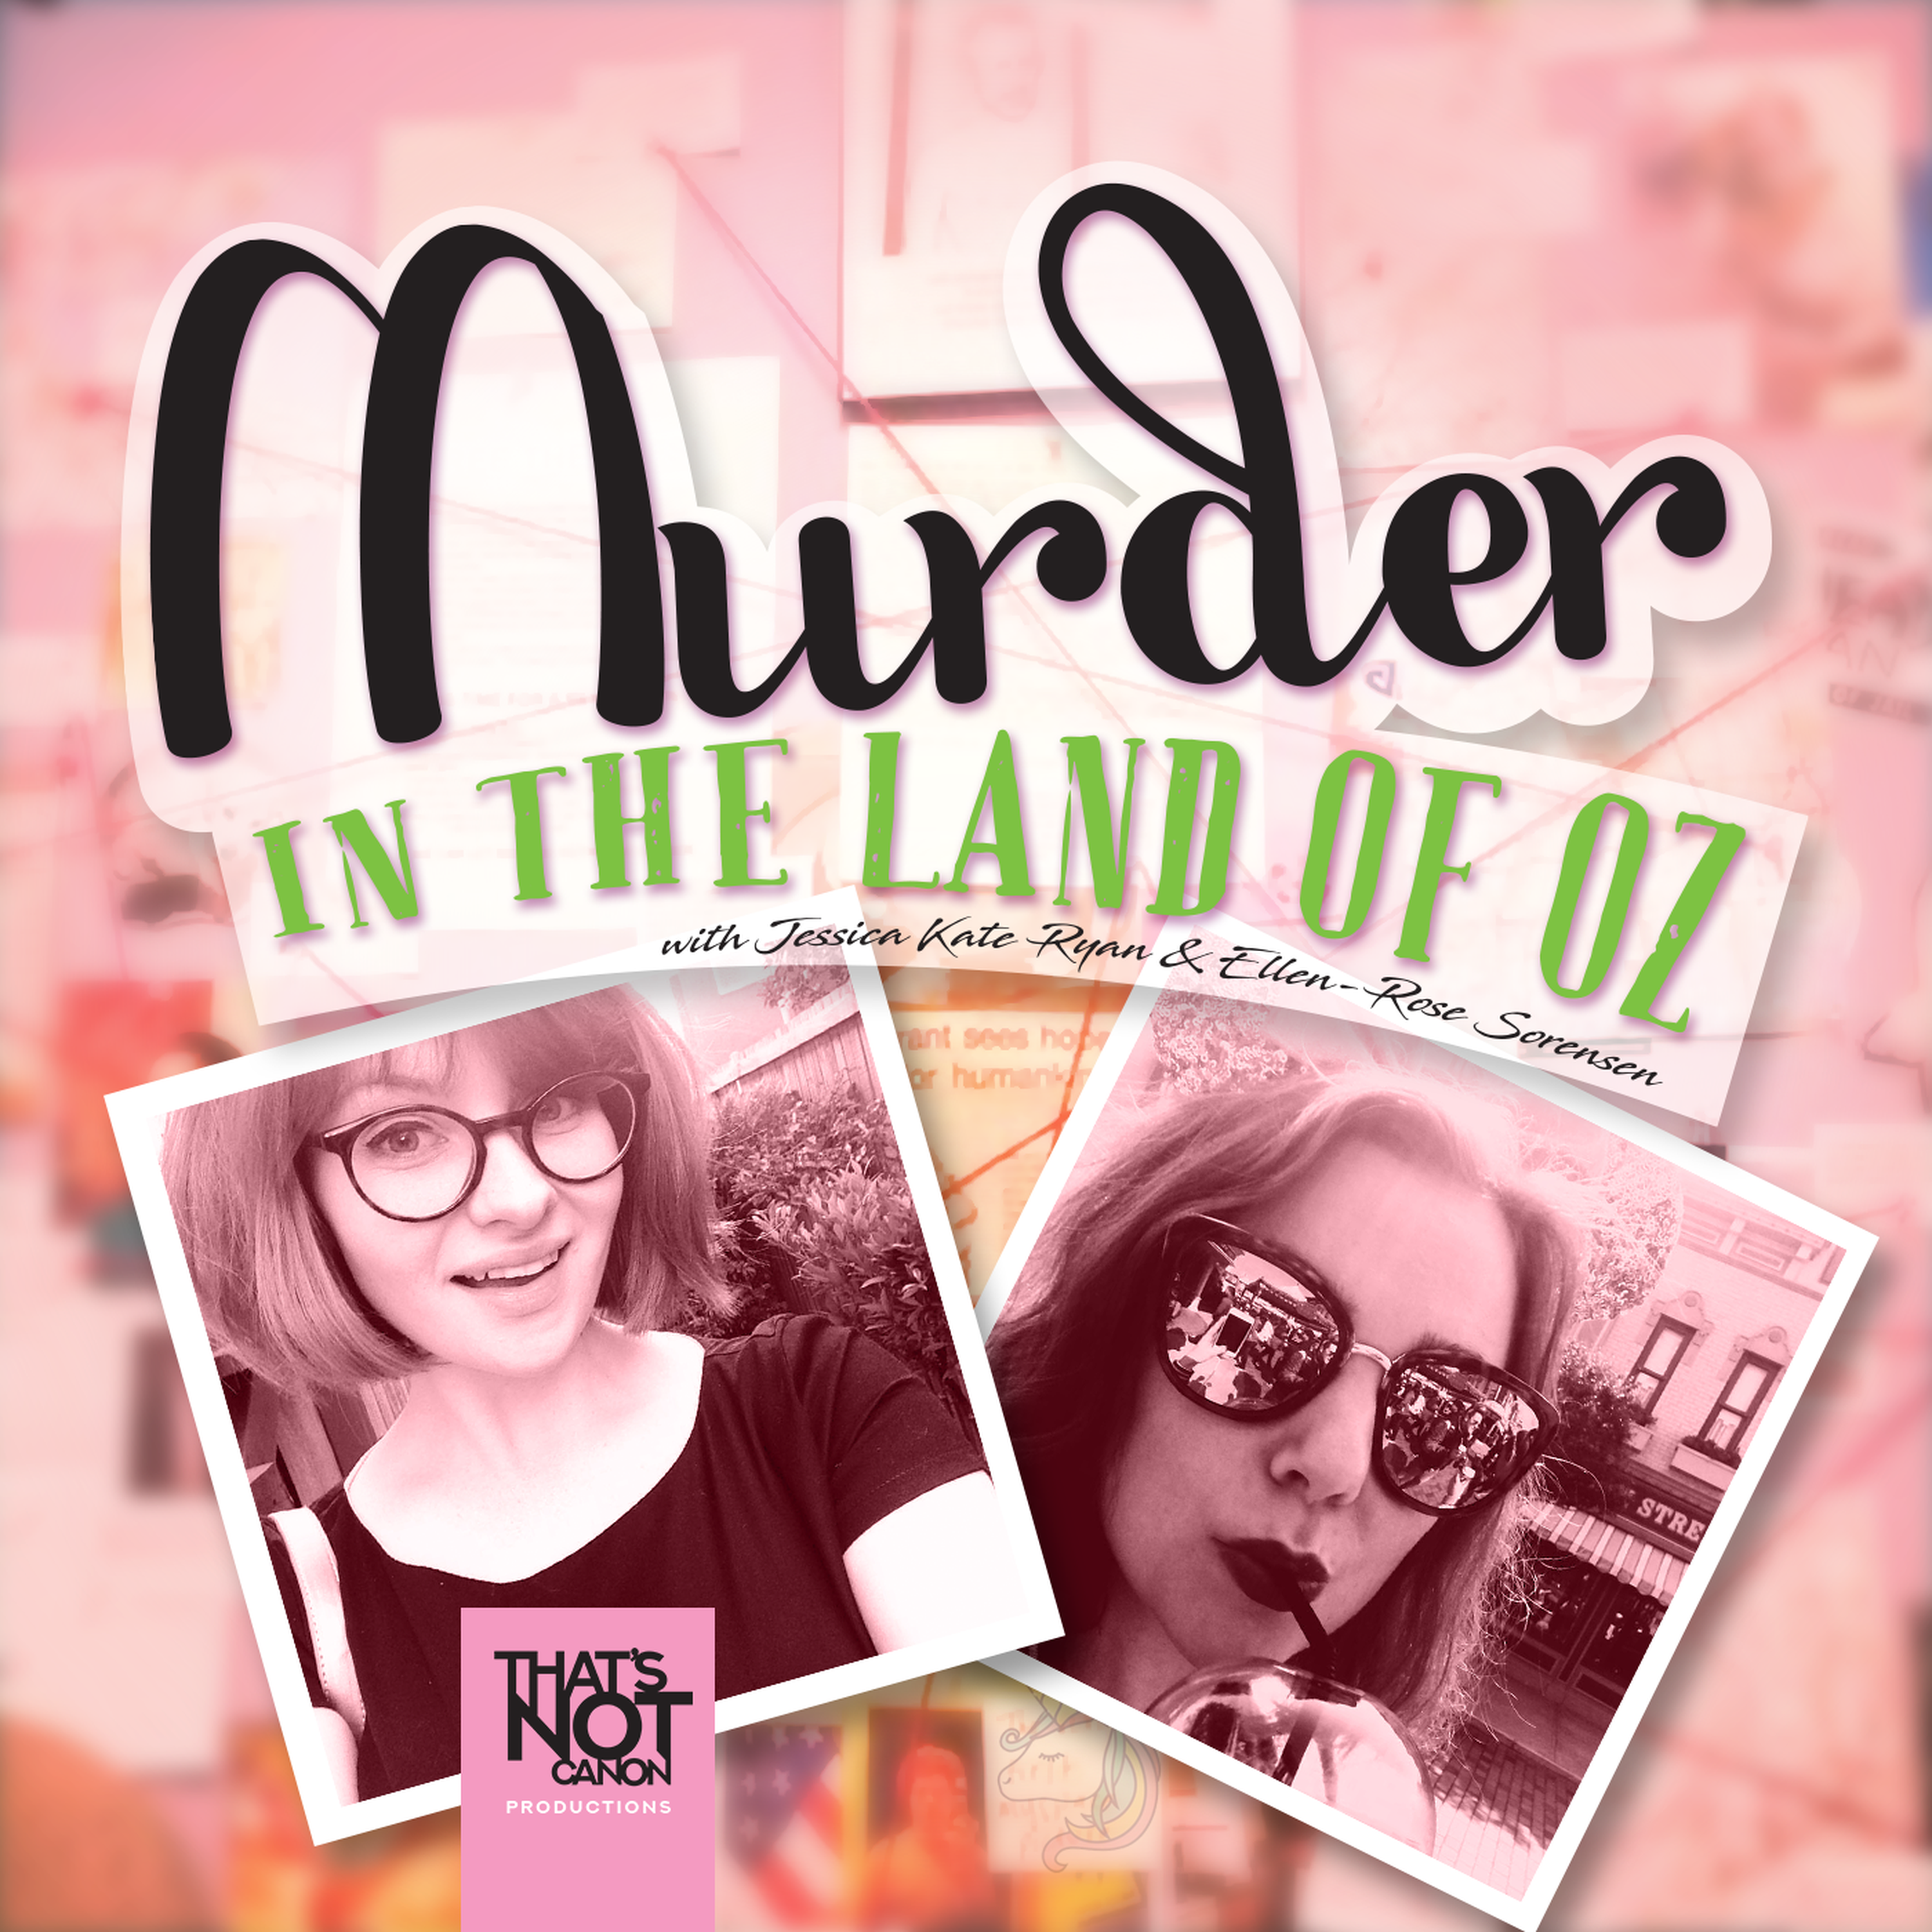 The Murder of Anita Cobby